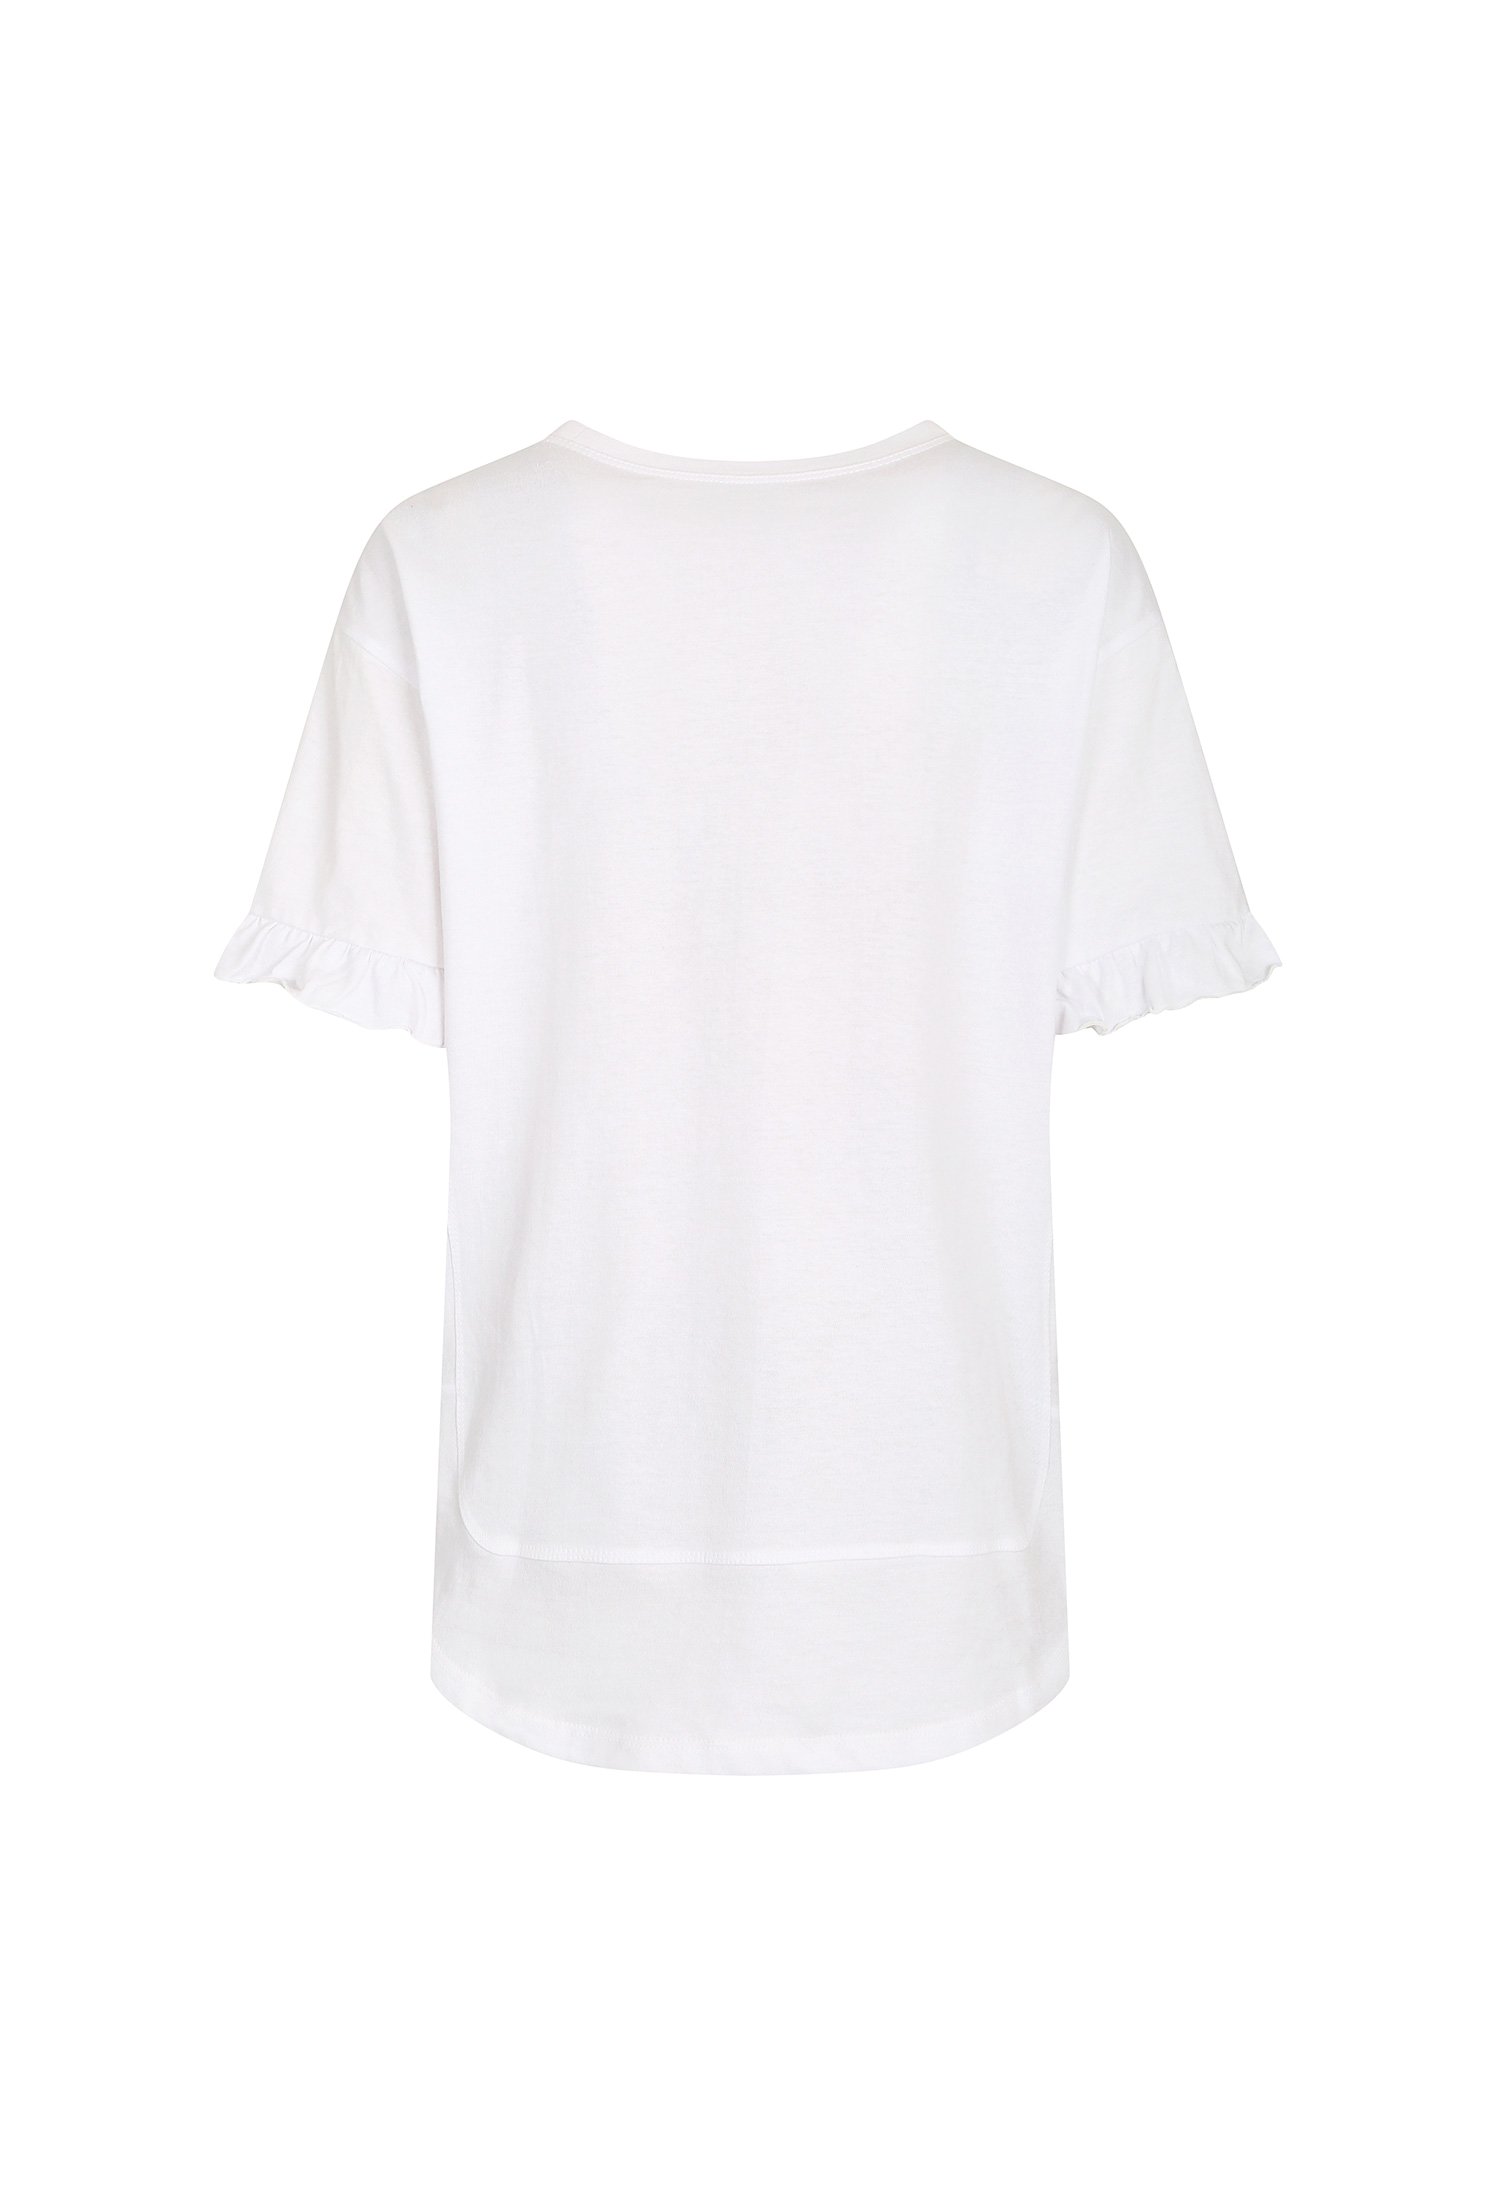 프릴 슬리브 프린트 티셔츠 (WHITE)